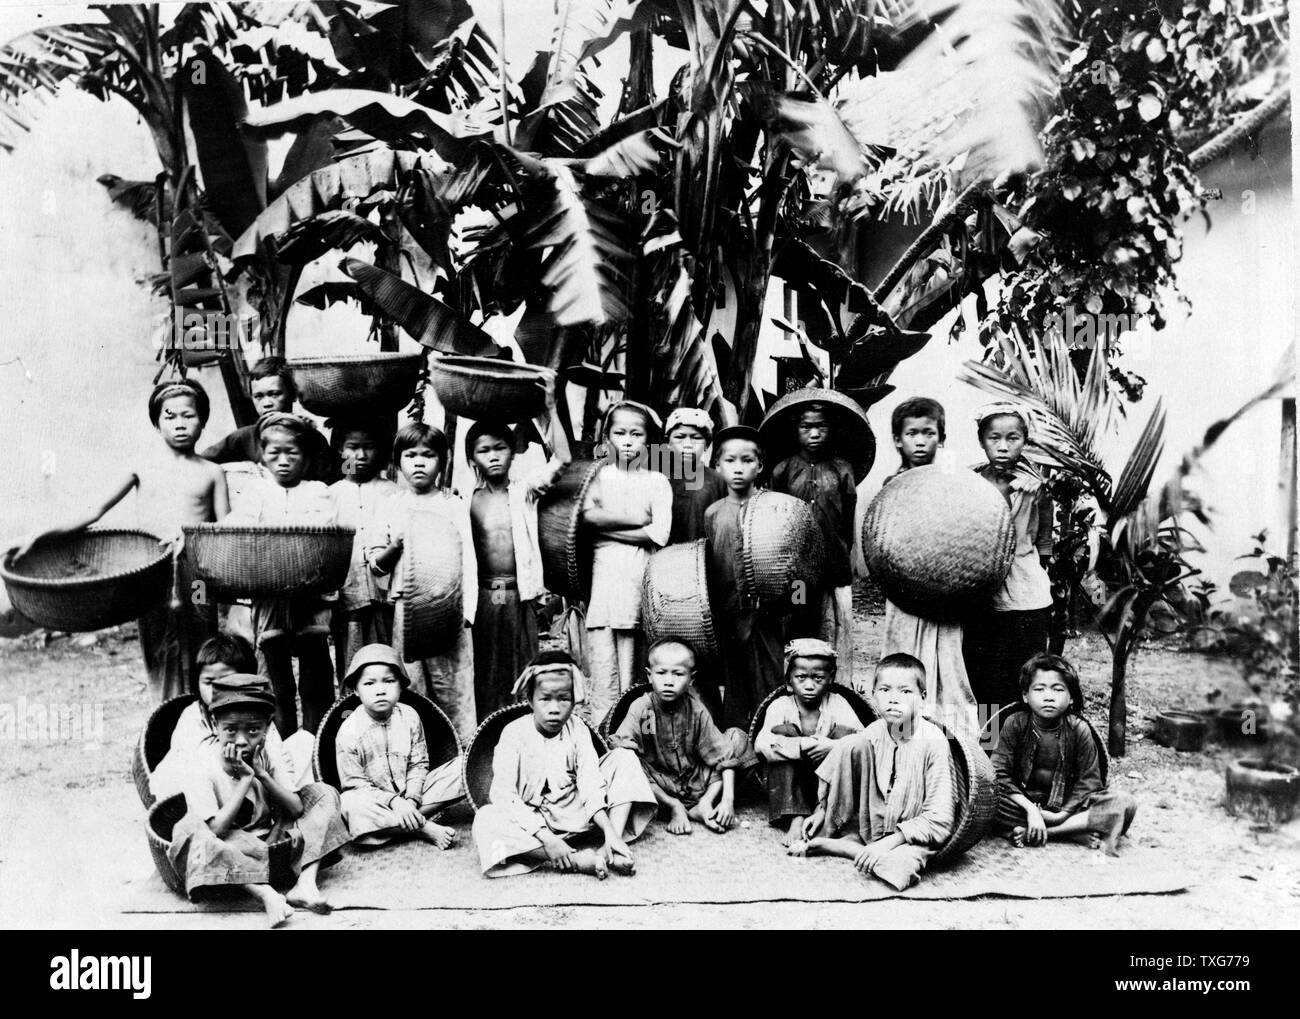 Los niños con cestas fabricada localmente planteaban debajo de una palmera, Saigón, Vietnam del Sur en Saigón fue la capital y el centro comercial del colonialismo francés en Indochina Francesa Foto de stock